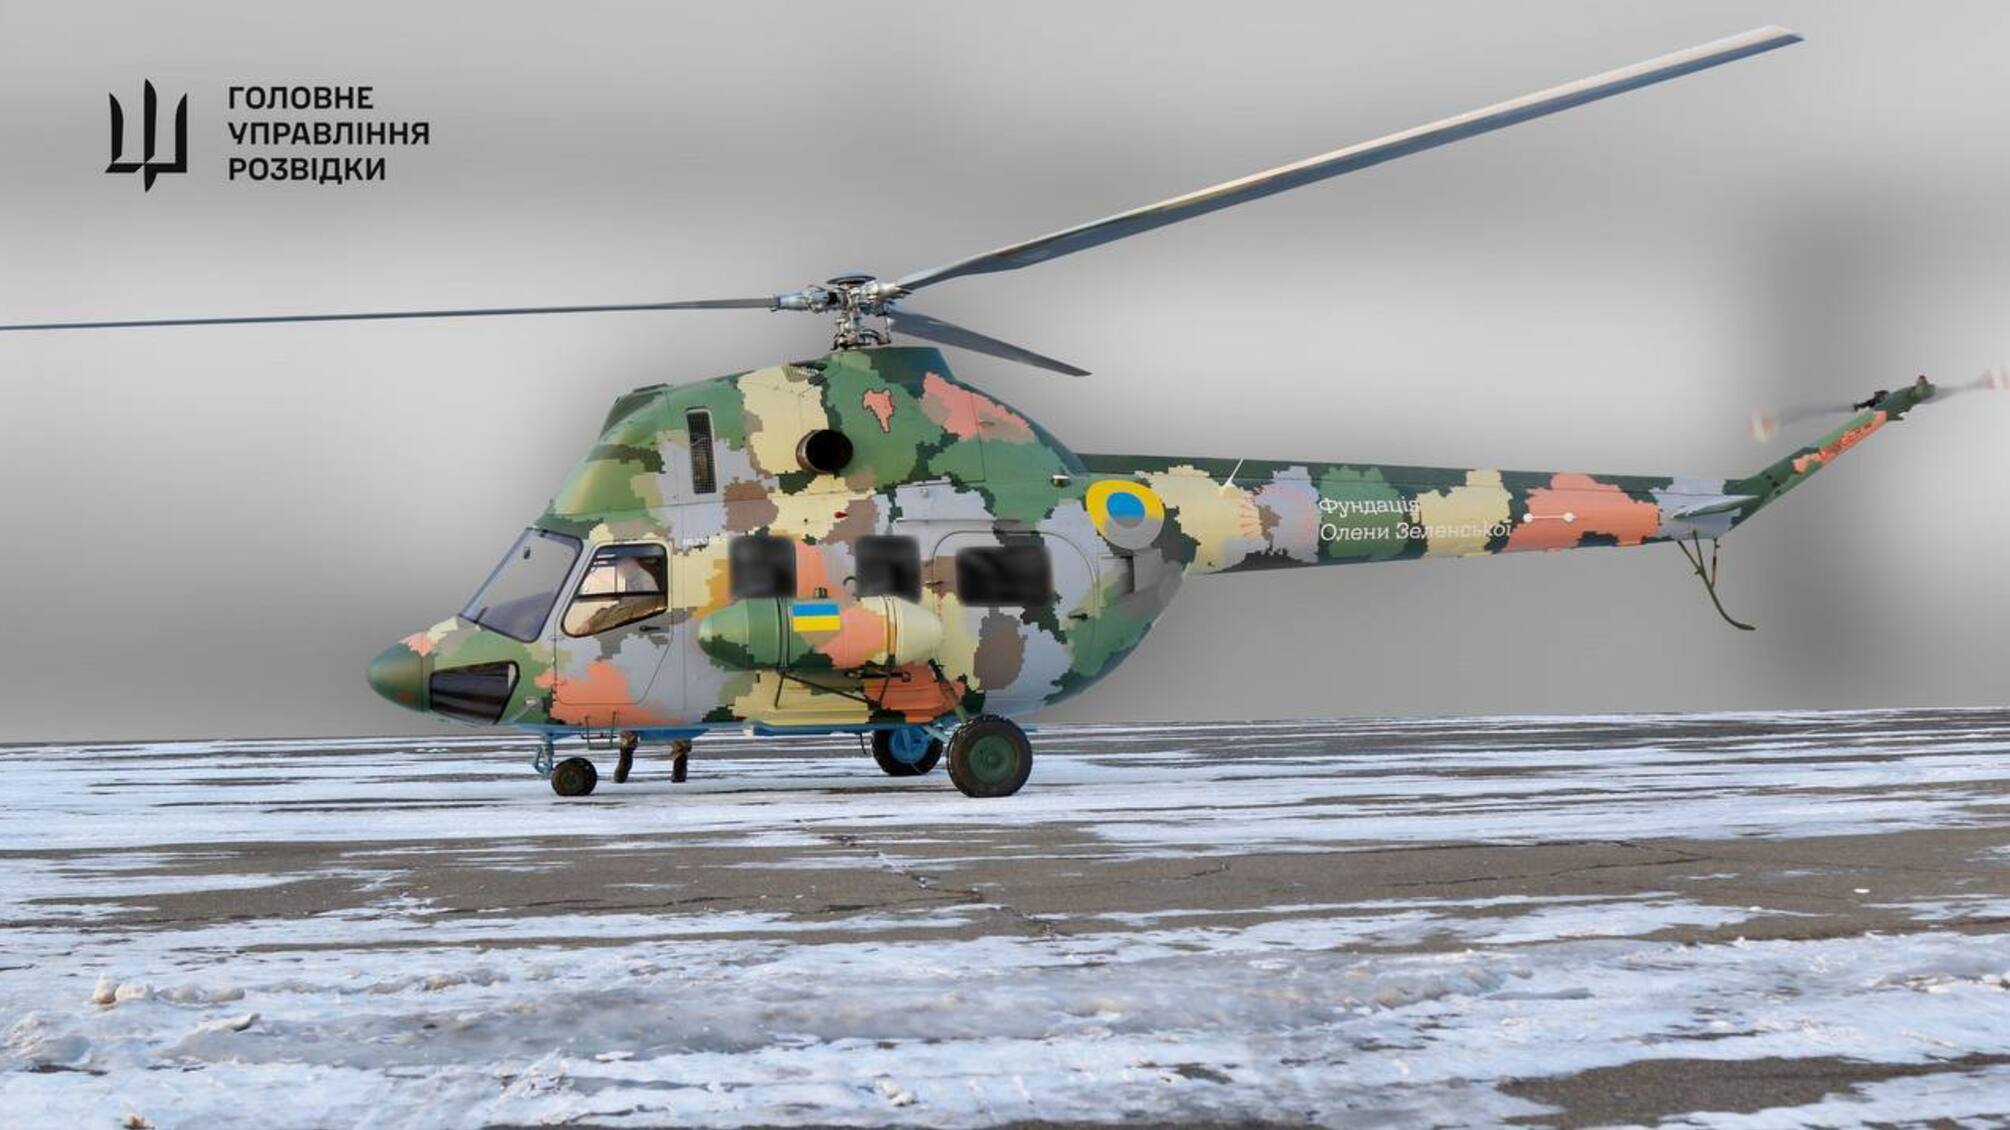 Украинская разведка получила уникальный вертолет для медицинской эвакуации с горячих точек фронта